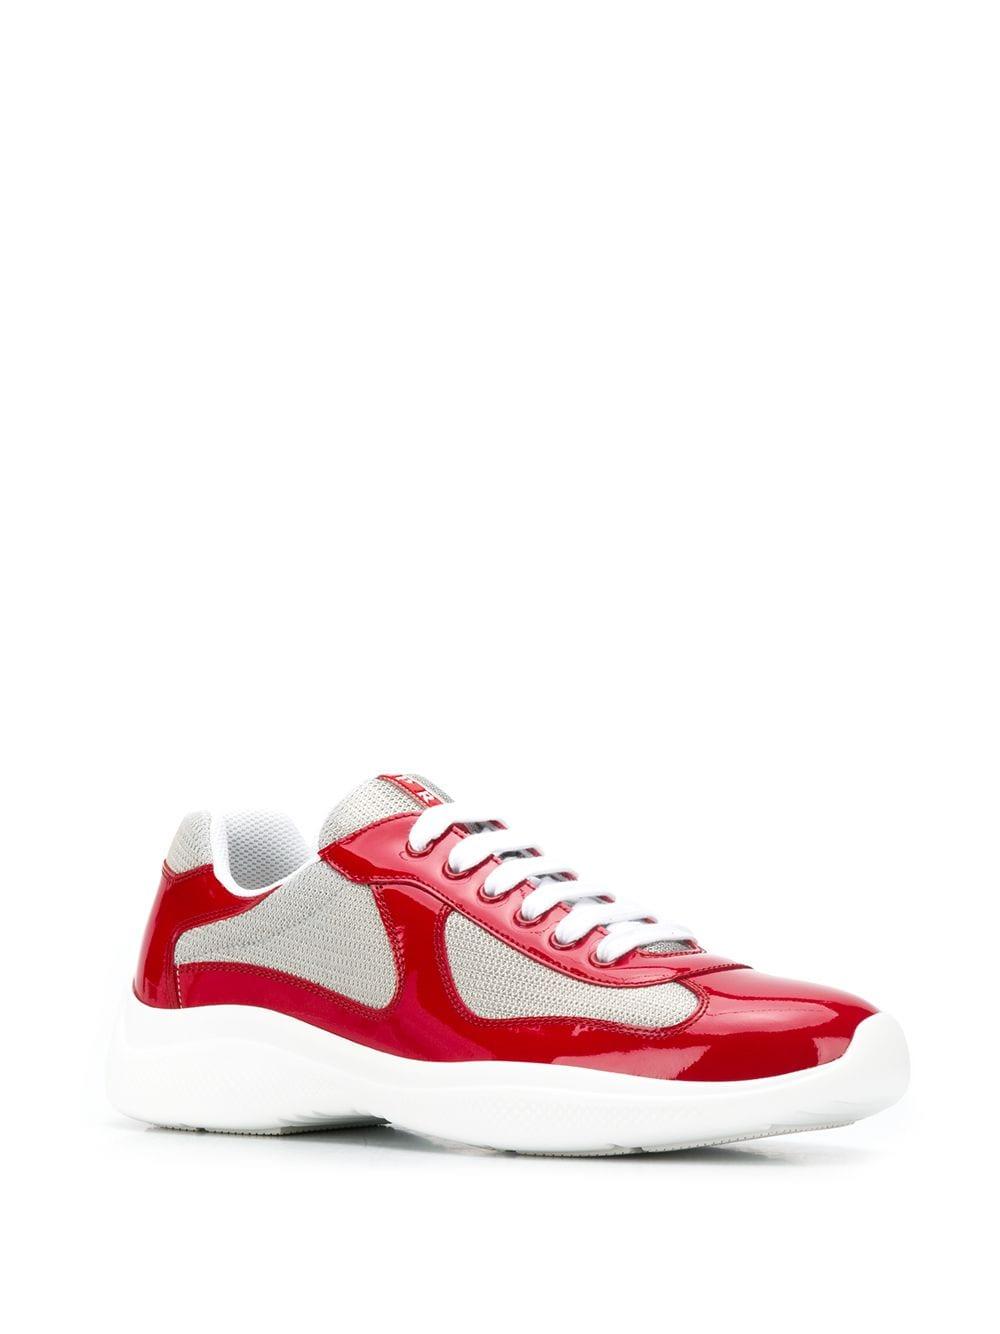 red prada sneakers for men